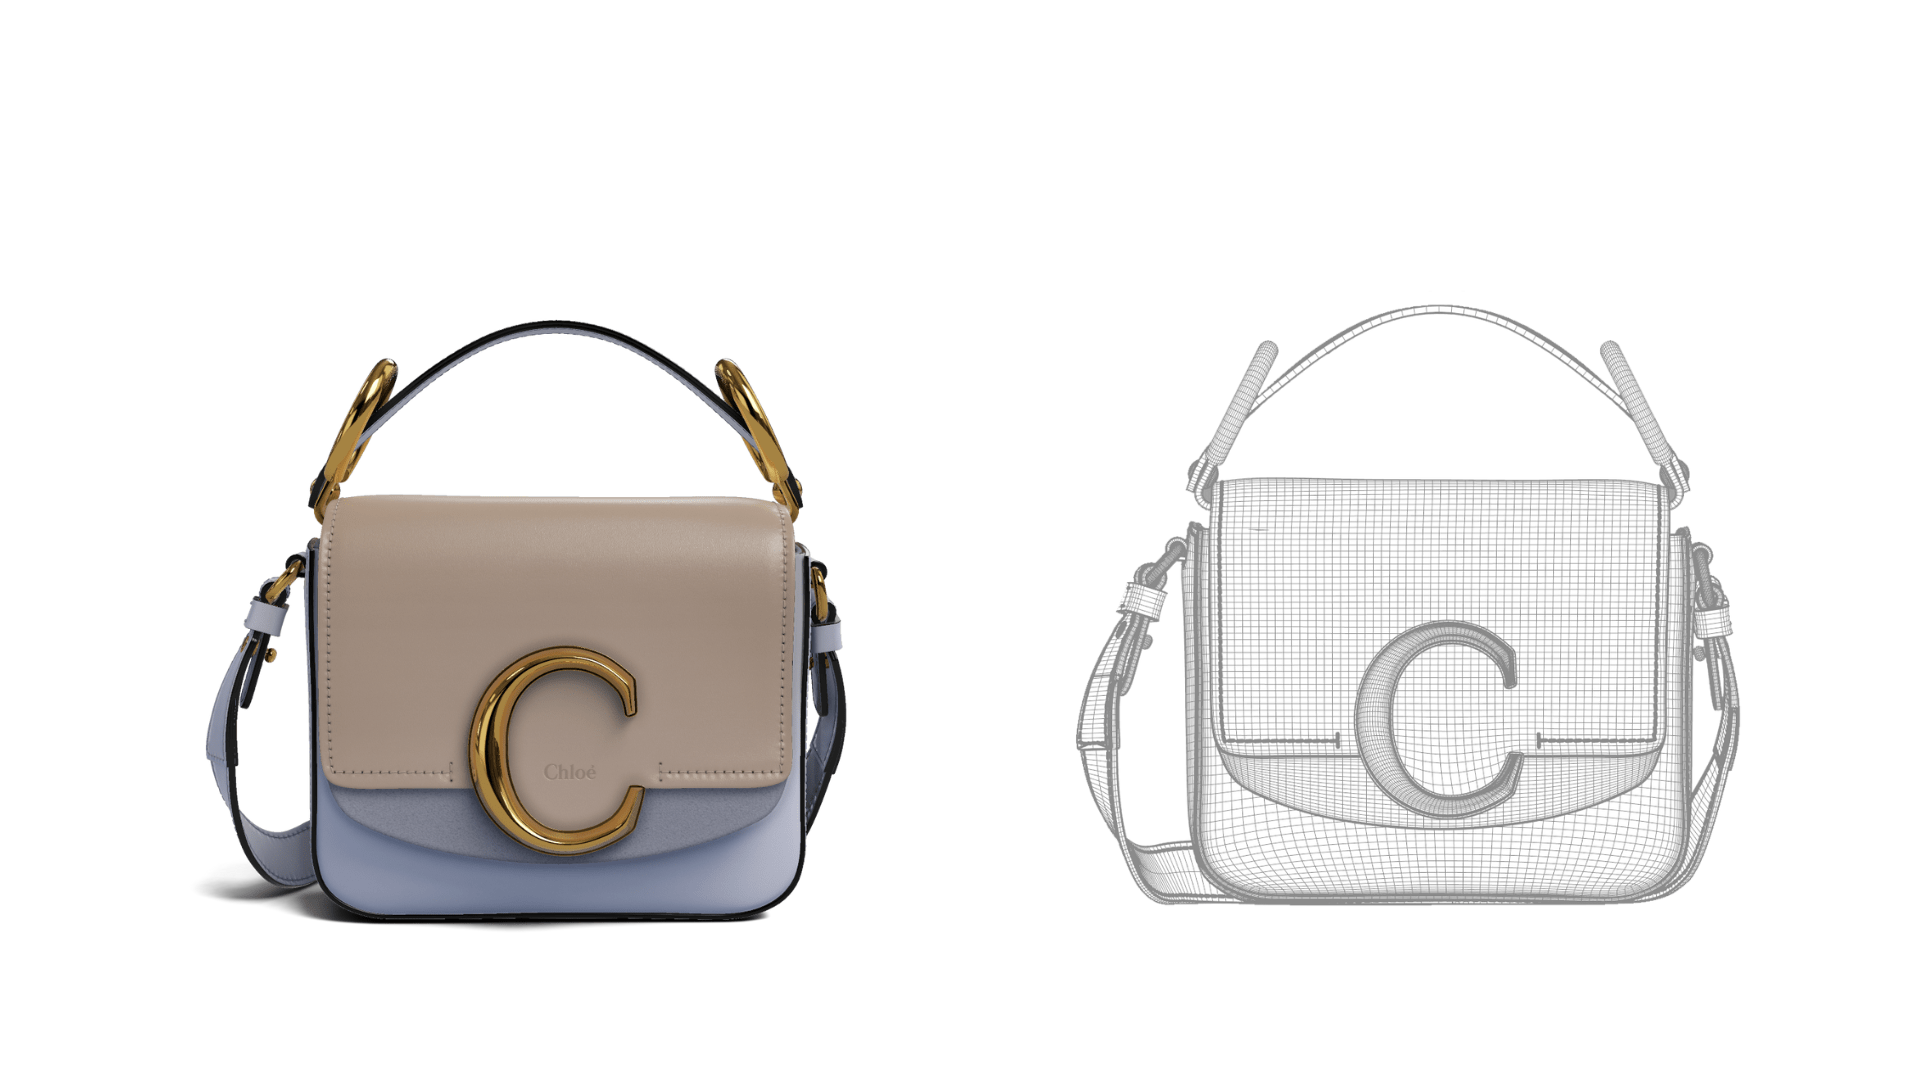 3D renderings of a Chloé bag